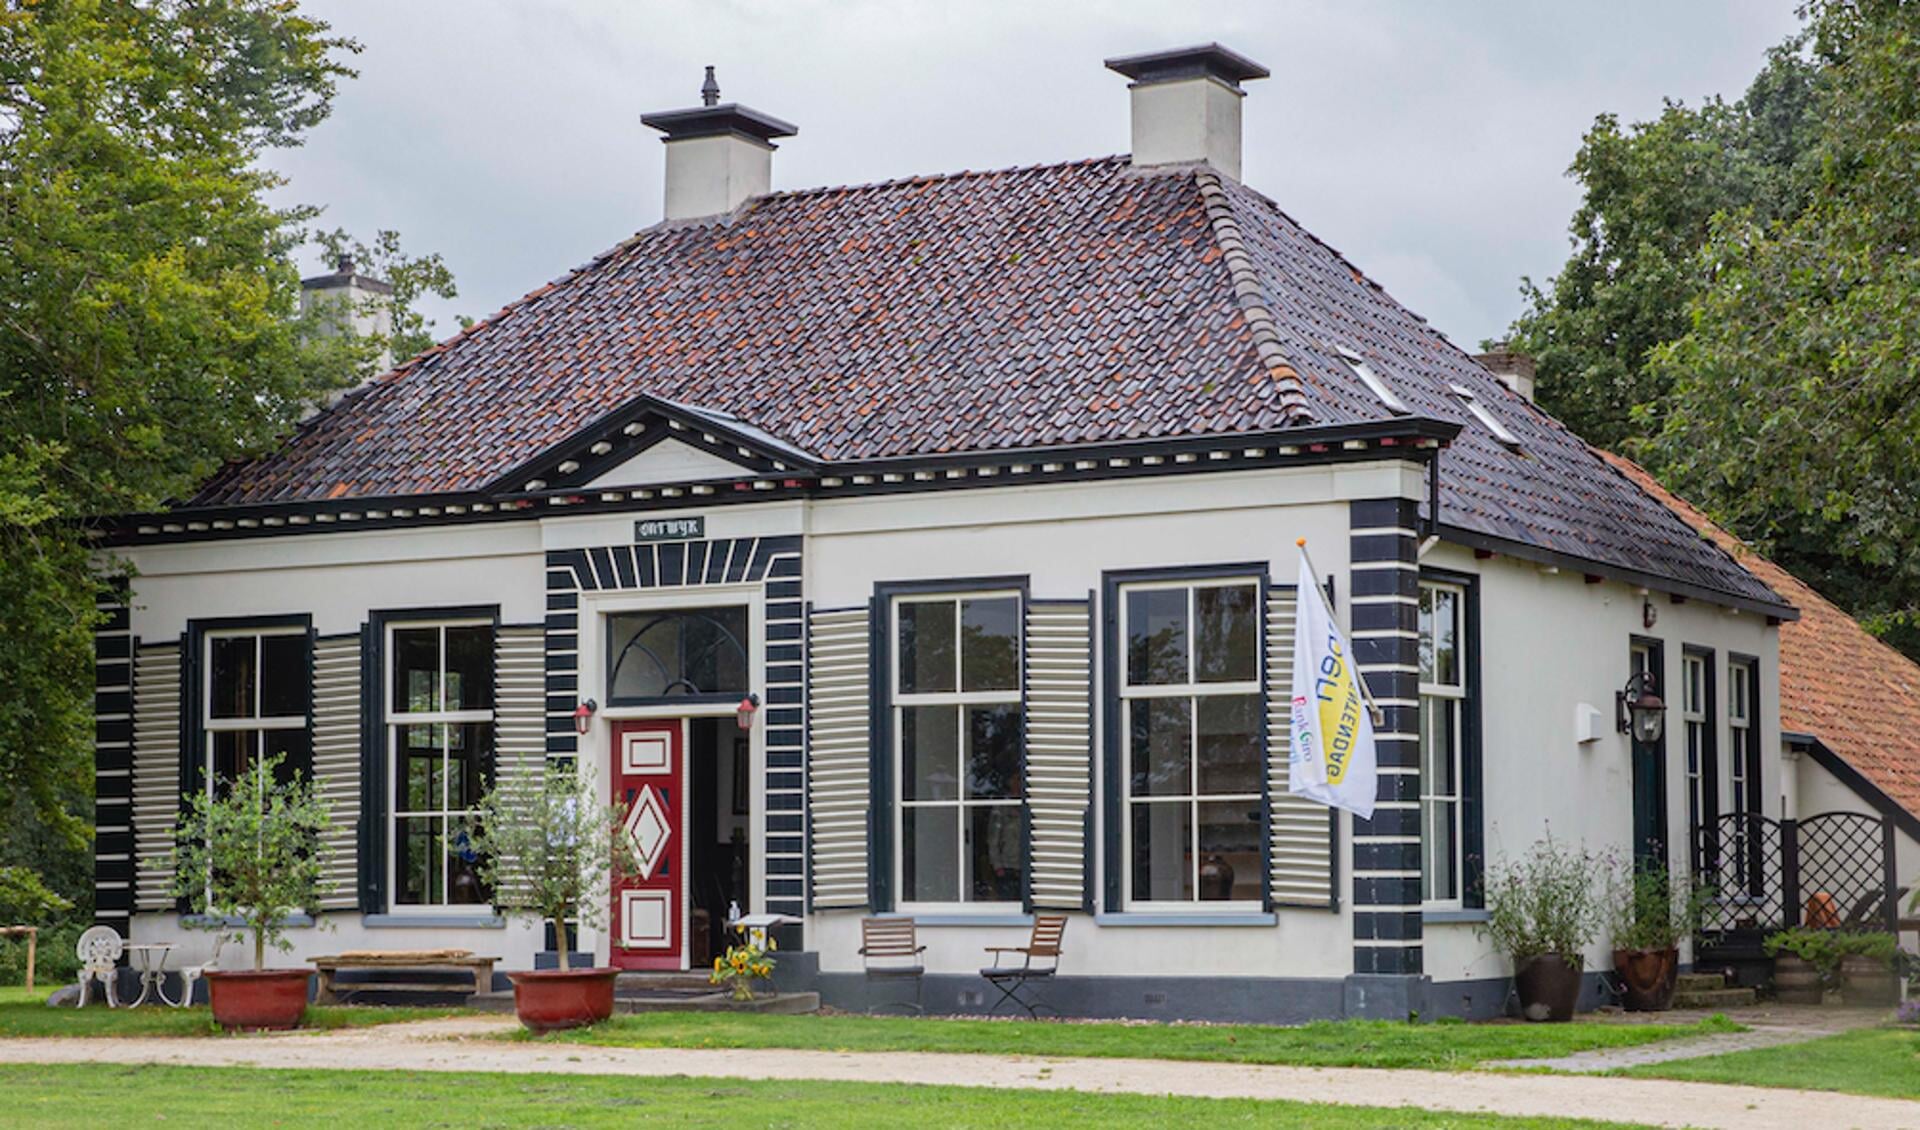 Herenhuis Ontwijk in Donkerbroek haalde het hoogste bezoekersaantal van Open Monumentendag dit jaar.